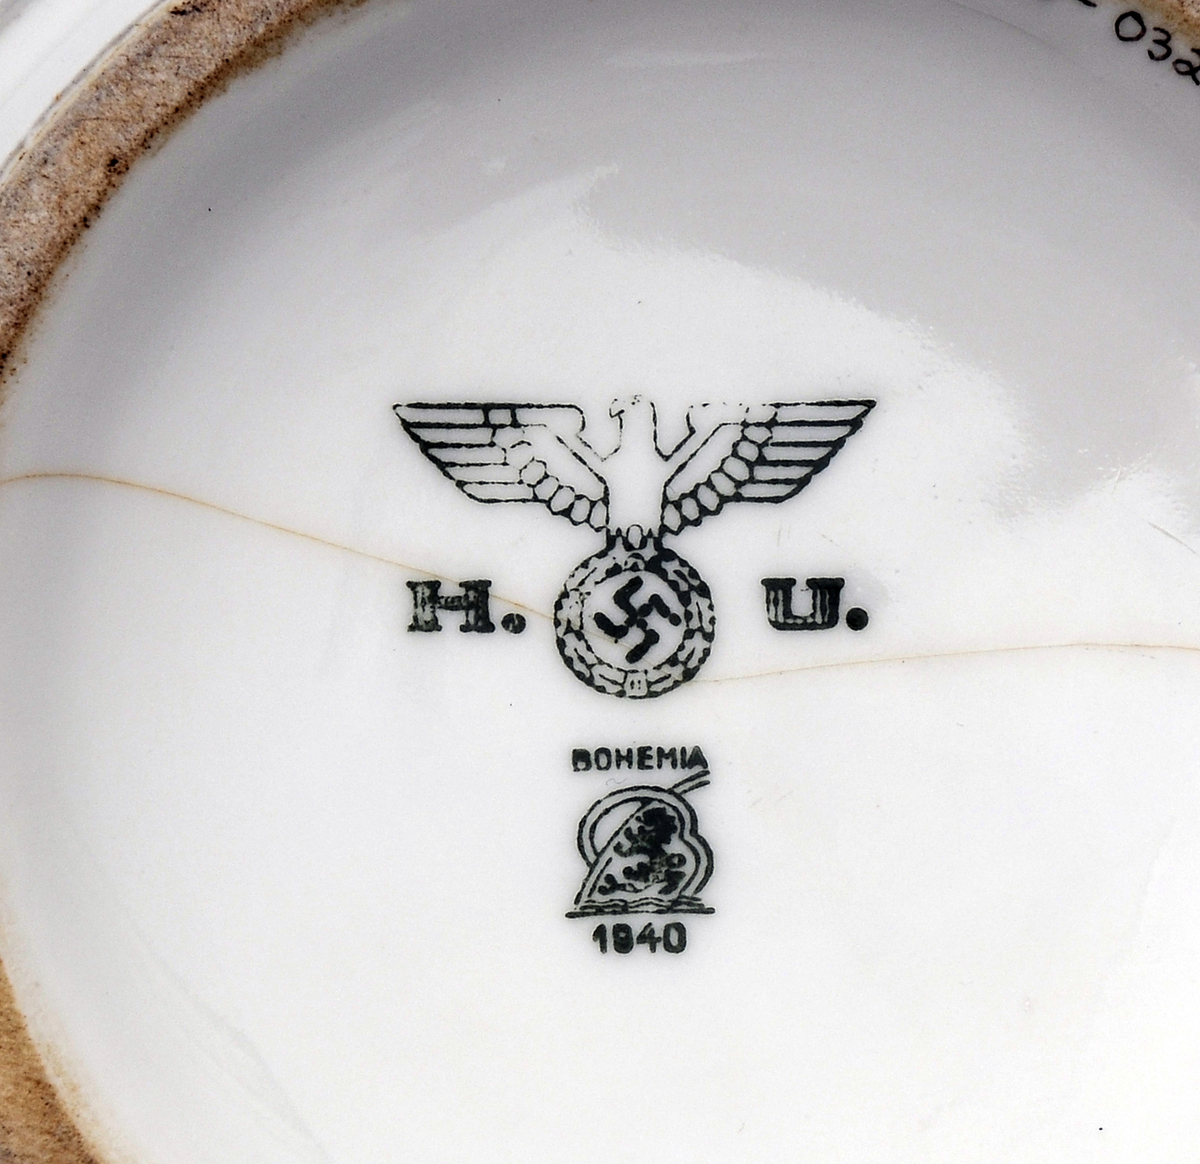 Keramikkbolle brukt av den tyske okkupasjonsmakten under andre verdenskrig. I bunnen er det et stempel av Den tyske ørn.